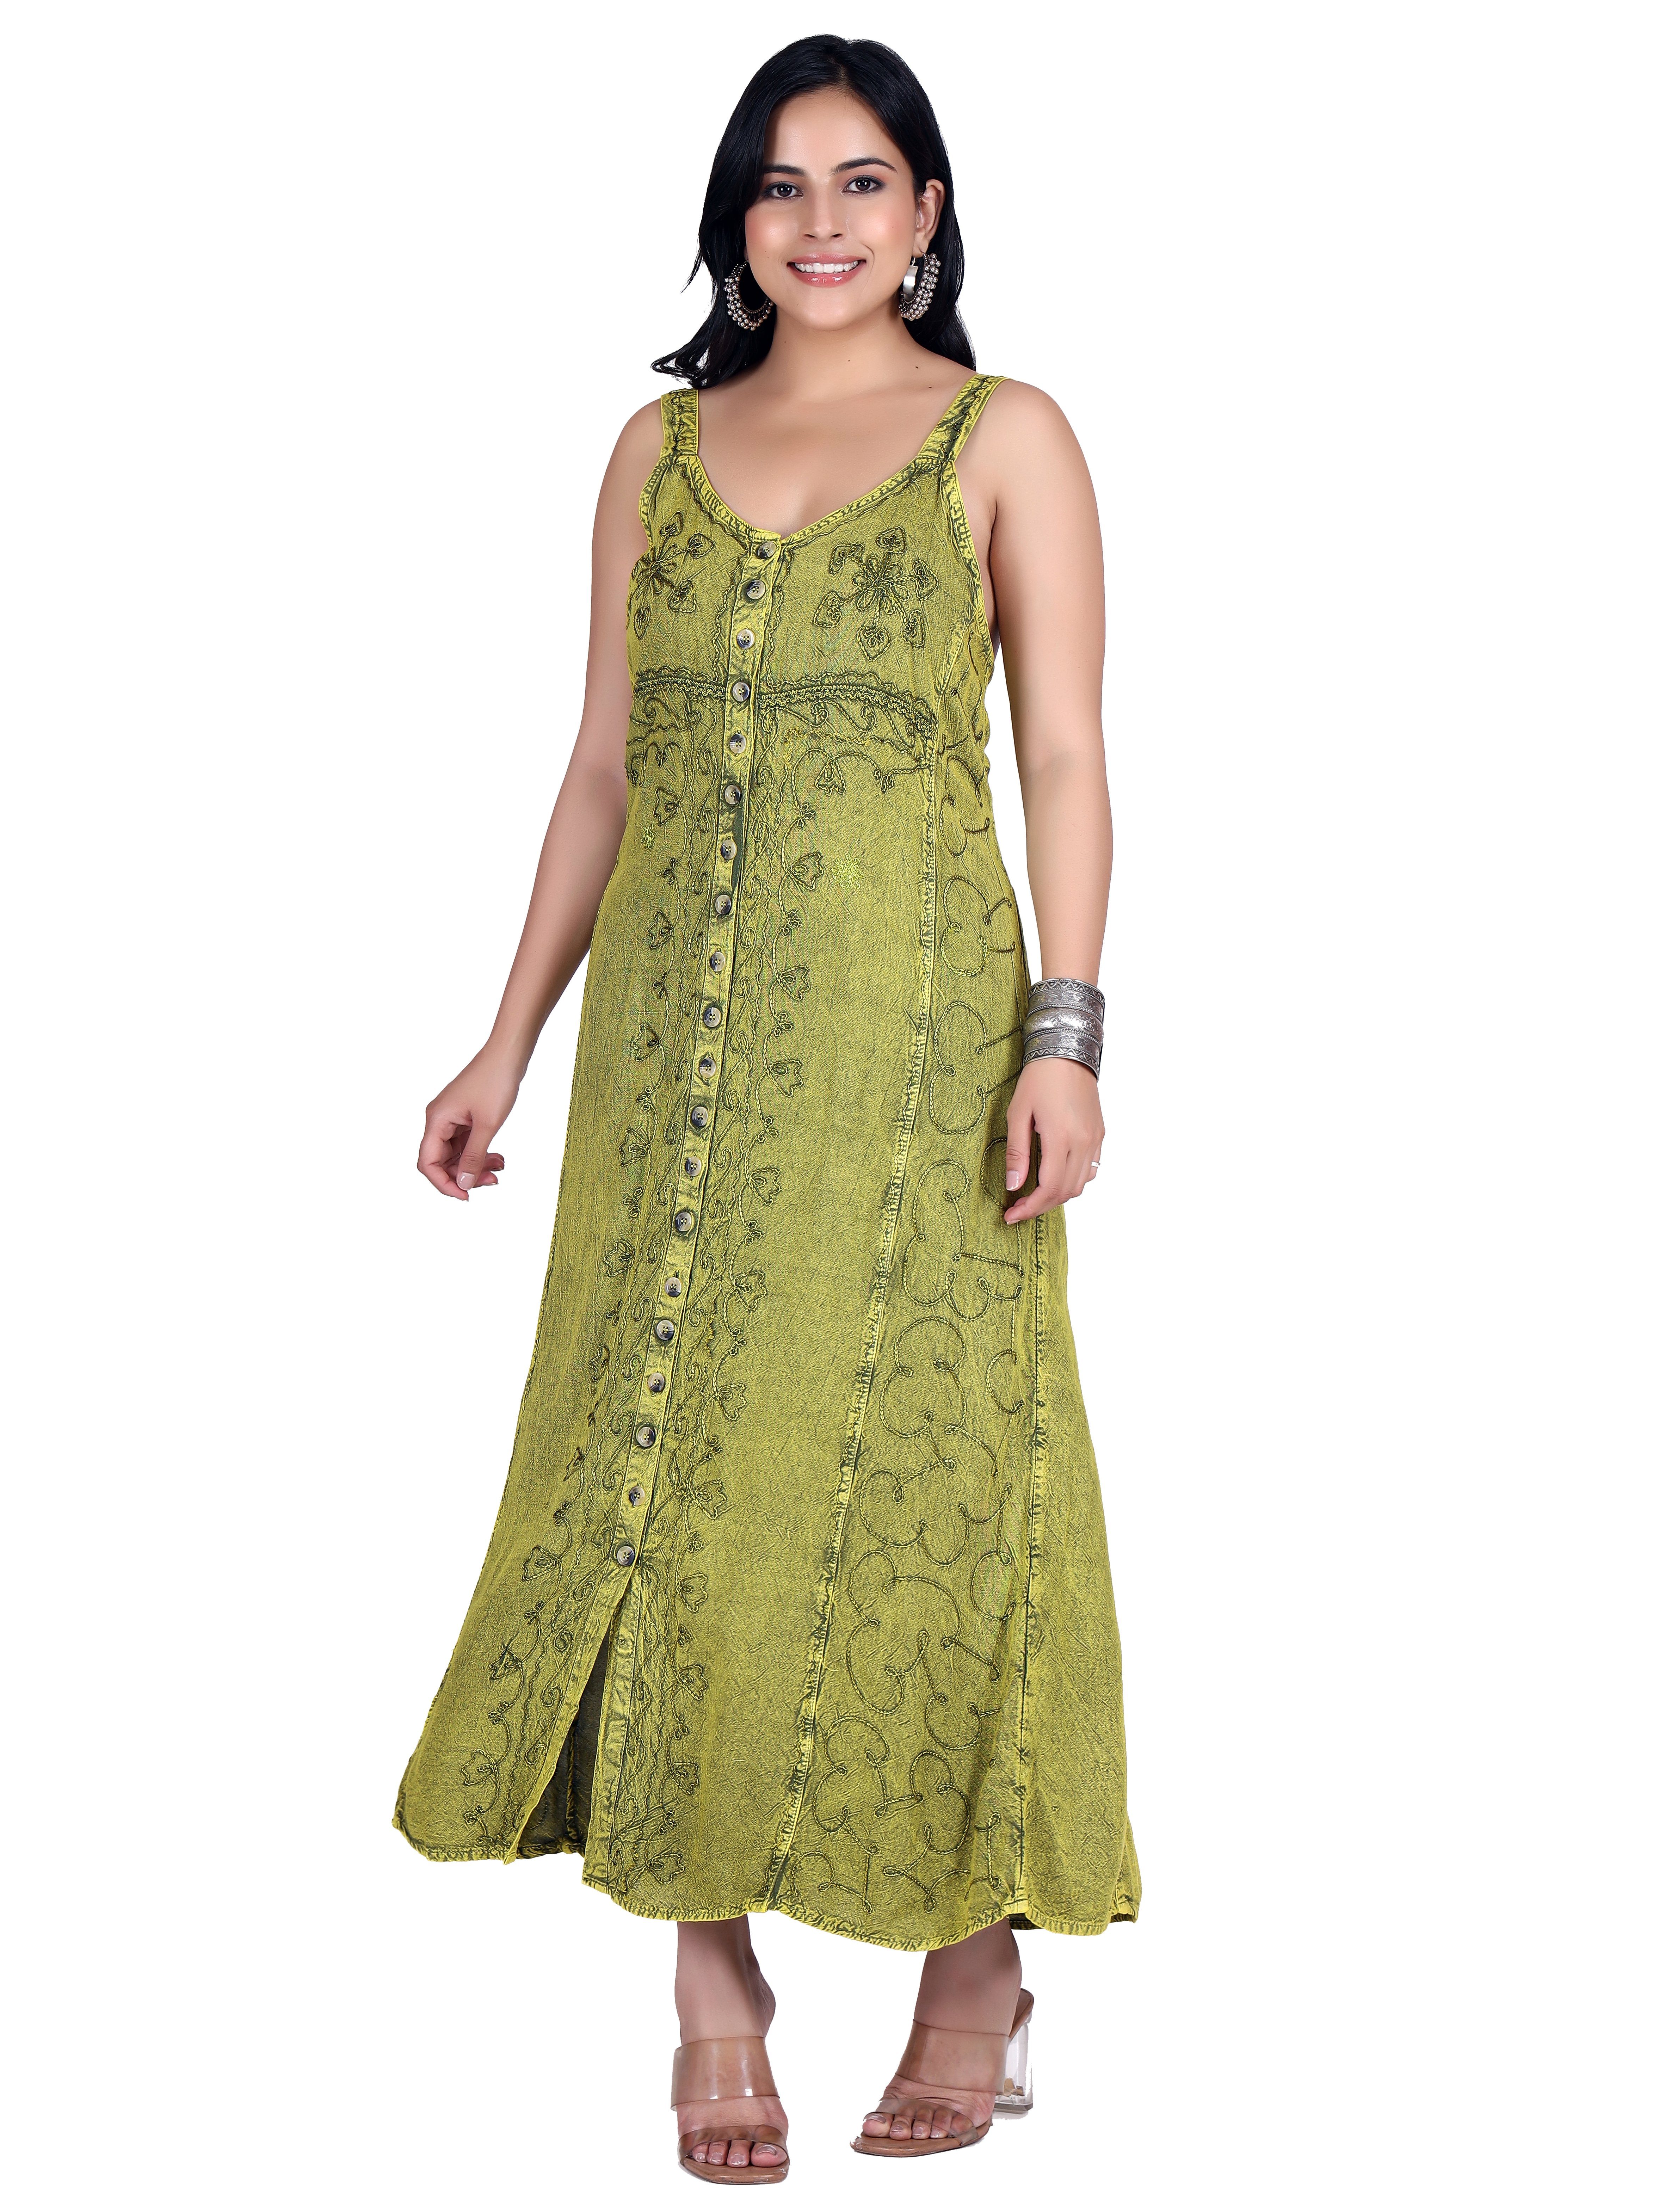 Sommerkleid, Bekleidung Hippie.. Boho Guru-Shop Besticktes lemon/Design alternative indisches 20 Midikleid